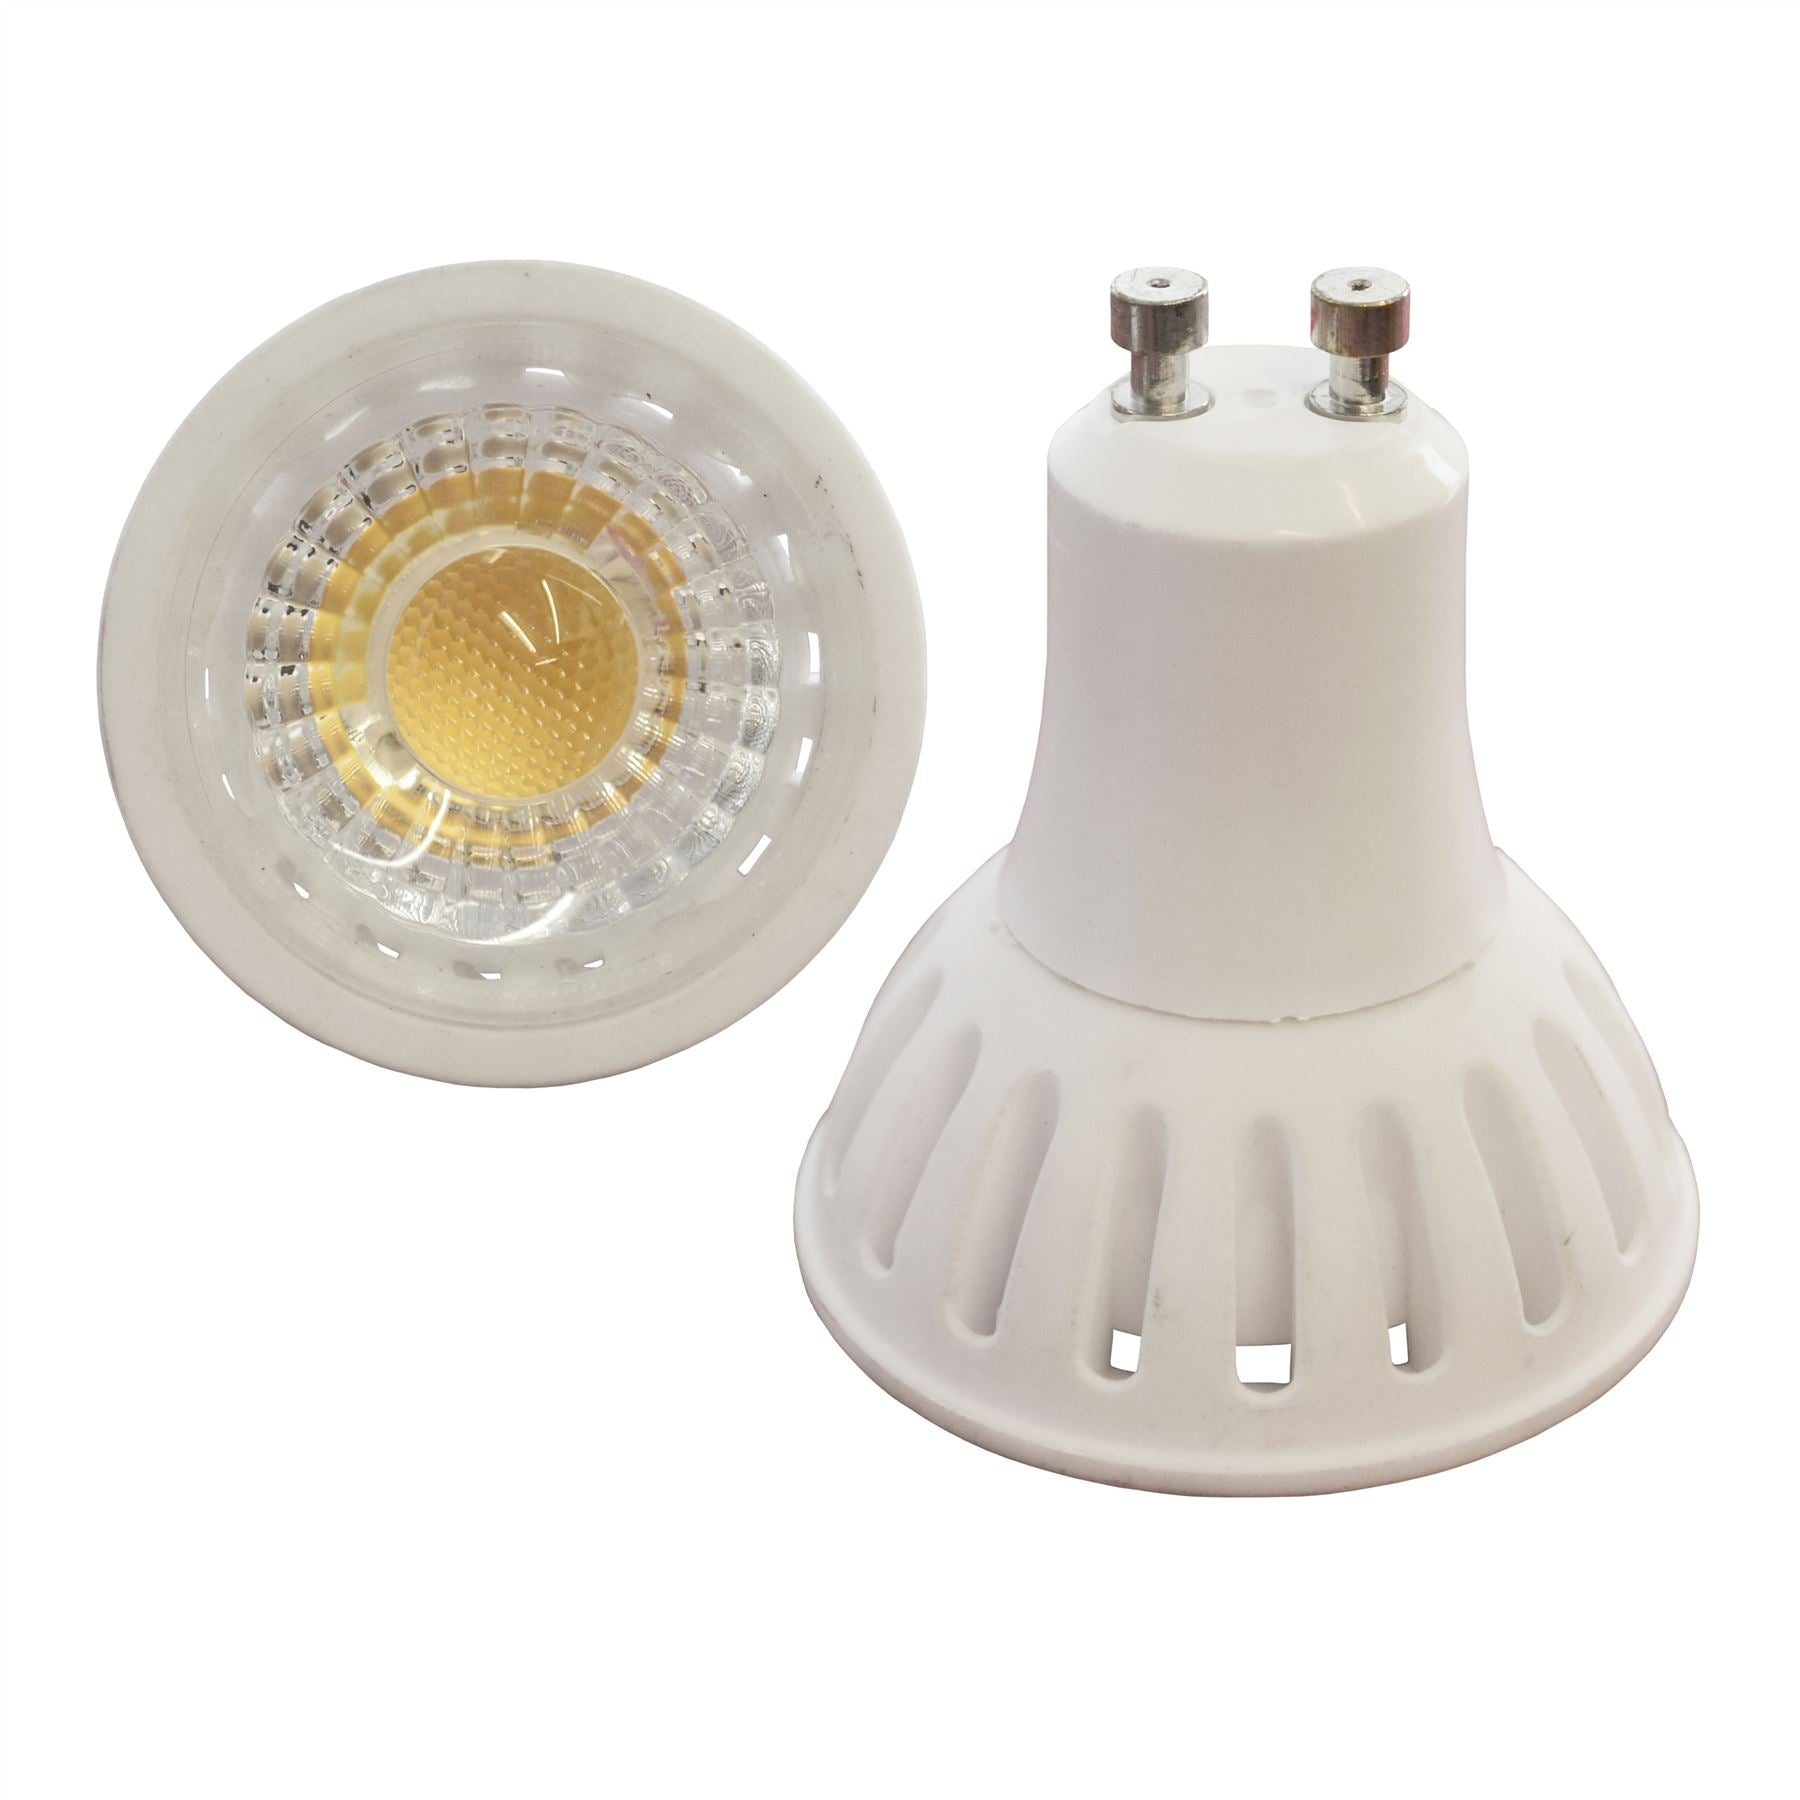 LED Bulb GU10 Spot Light Dimmable 6w 450 Lumen 3000k Warm White Energy Saver E11